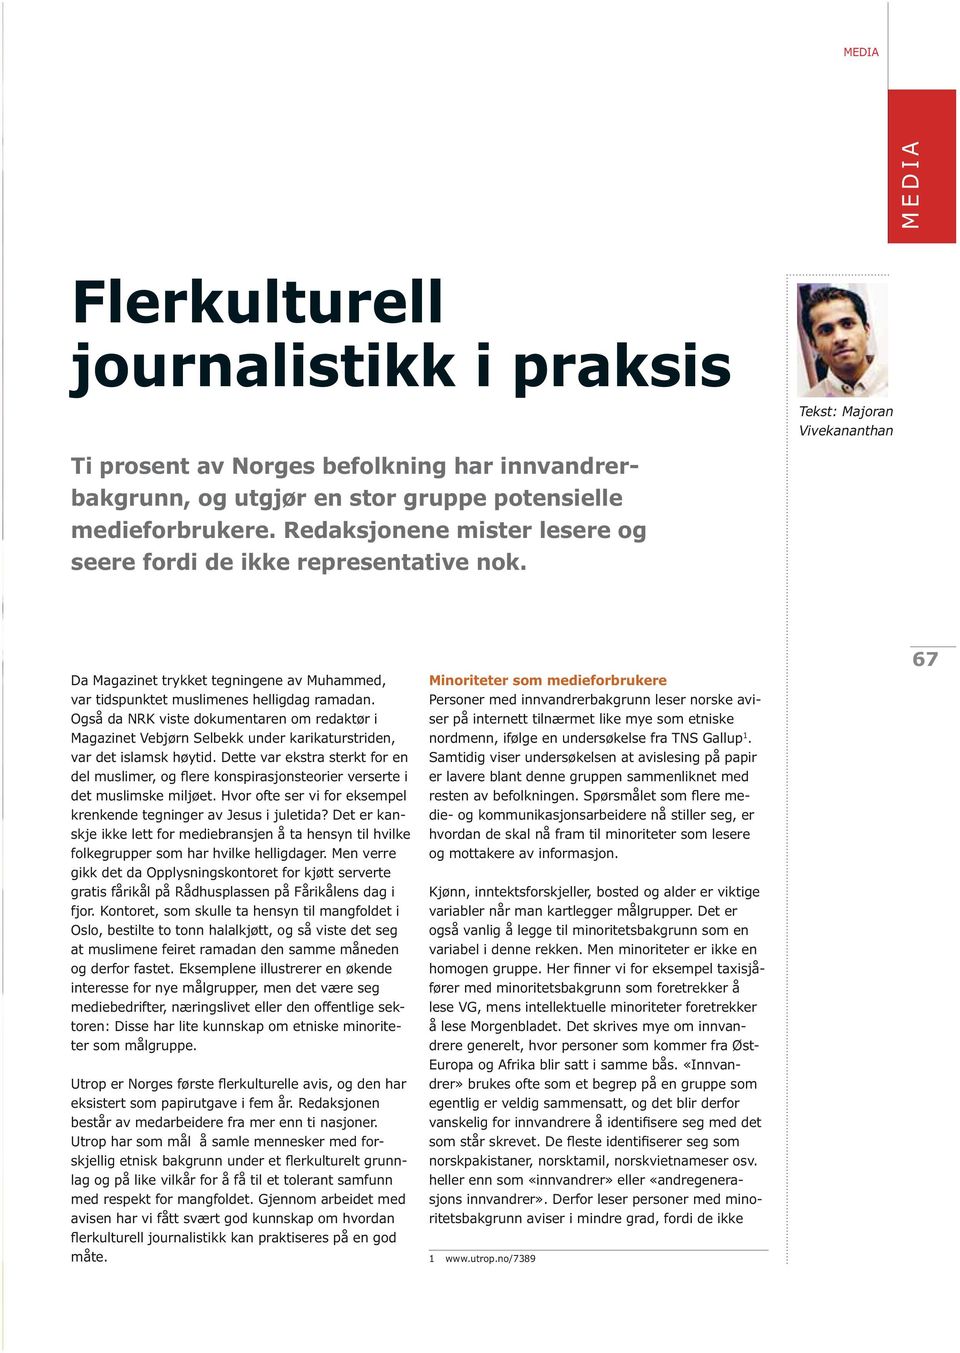 Også da NRK viste dokumentaren om redaktør i Magazinet Vebjørn Selbekk under karikaturstriden, var det islamsk høytid.